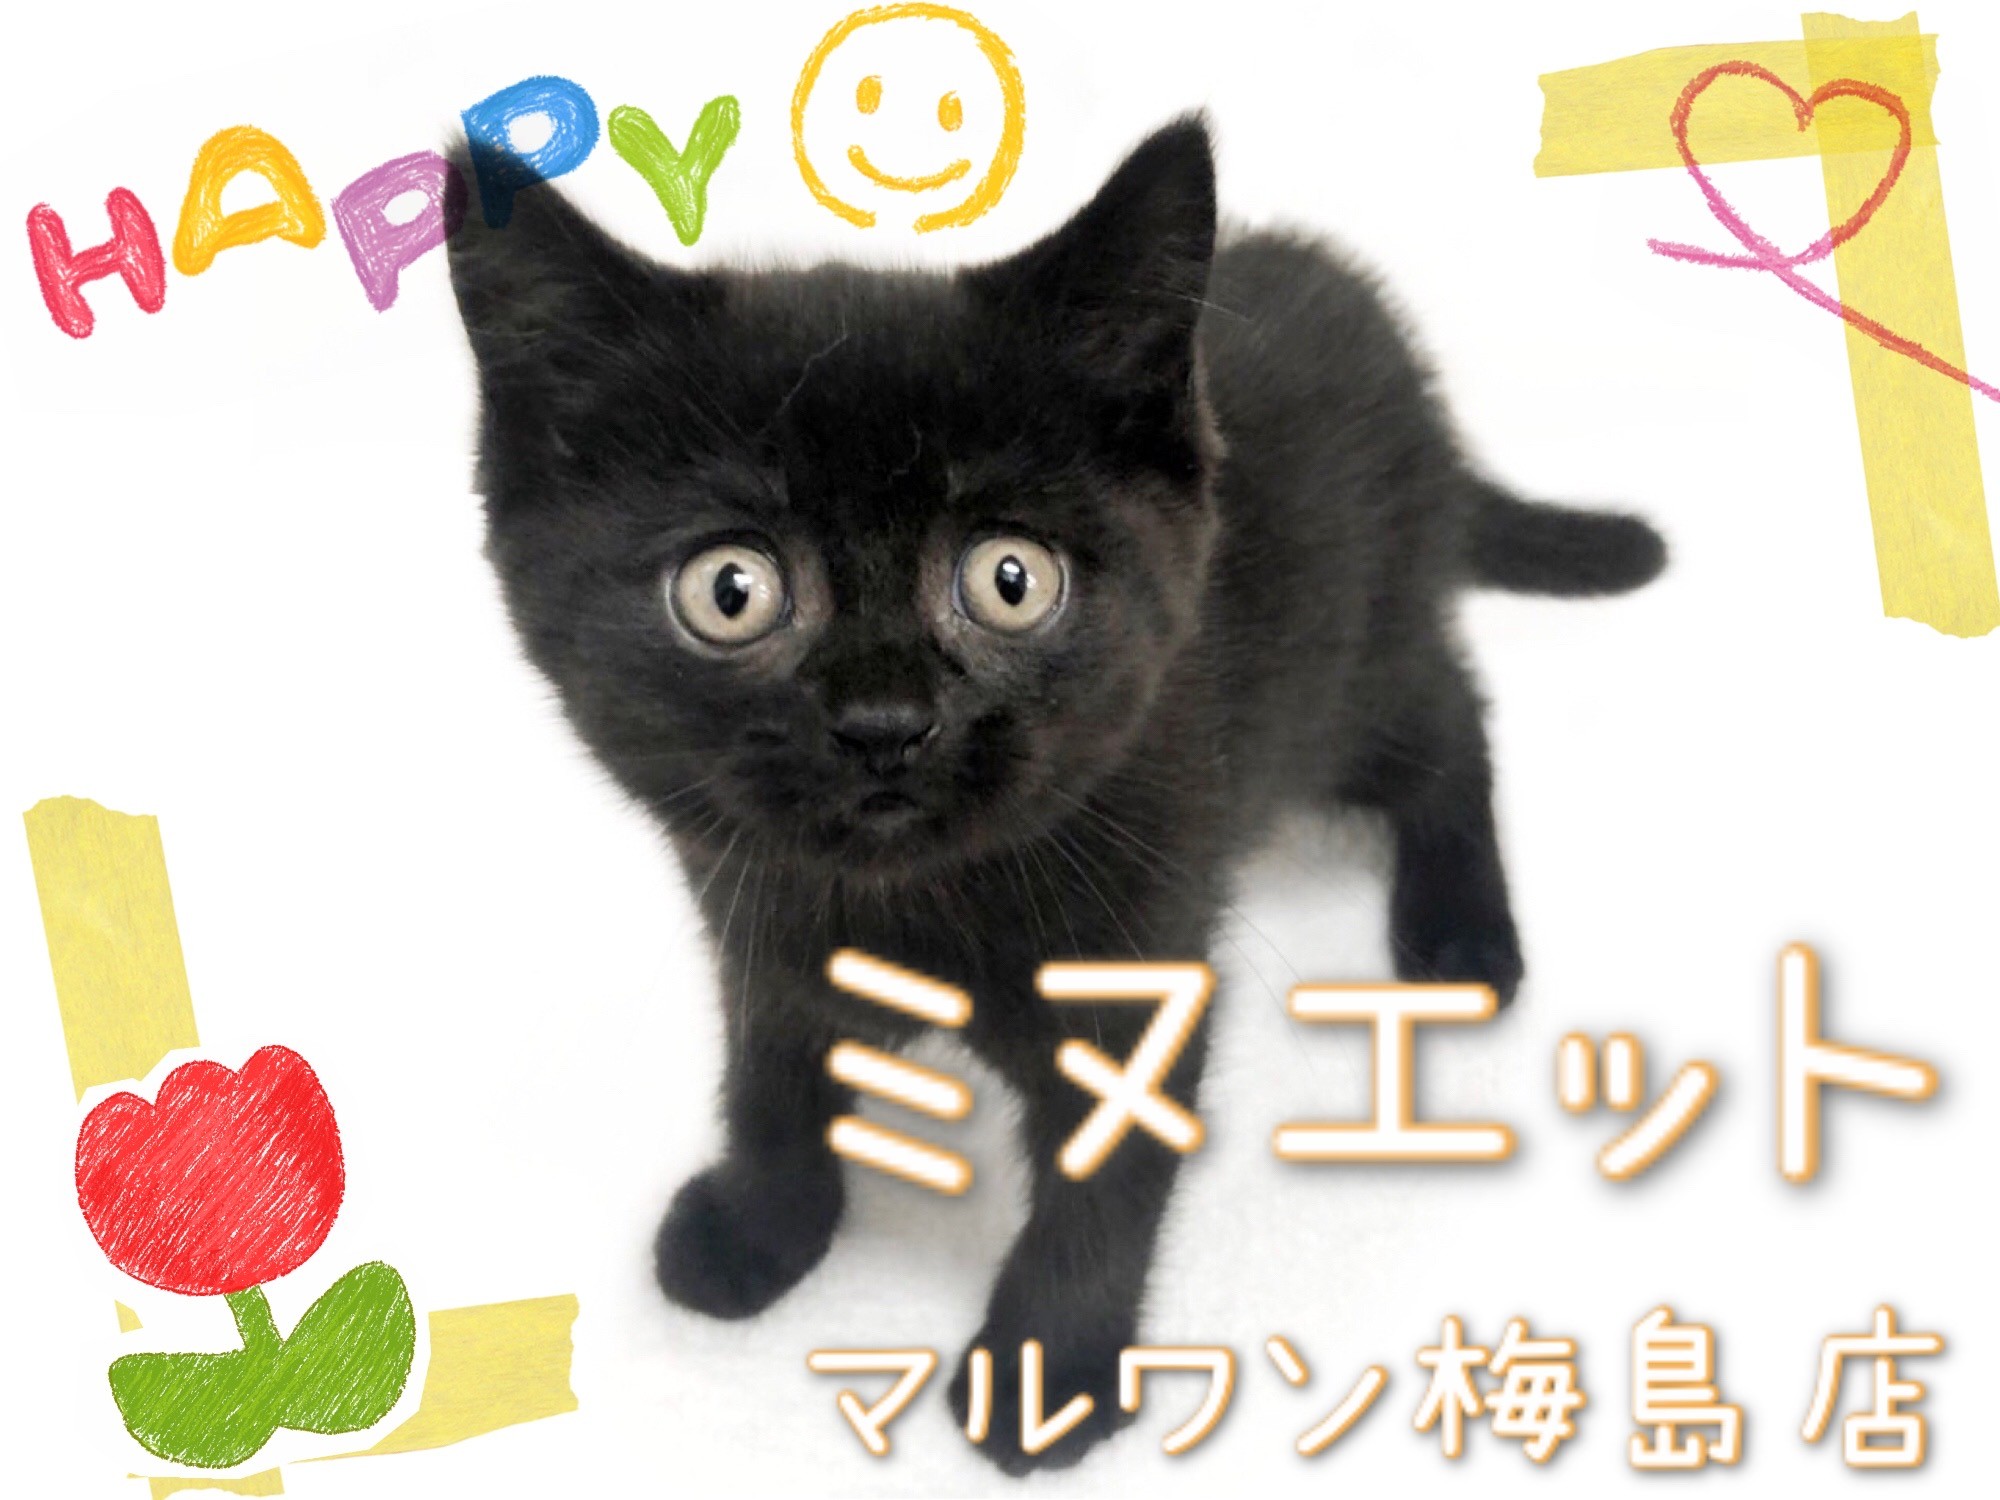 ミヌエット ゴロゴロすりすり 甘えん坊な黒猫の男の子 マルワンblog ペットショップ マルワン 小さめ子犬 美形な子猫 初心者安心のサポート